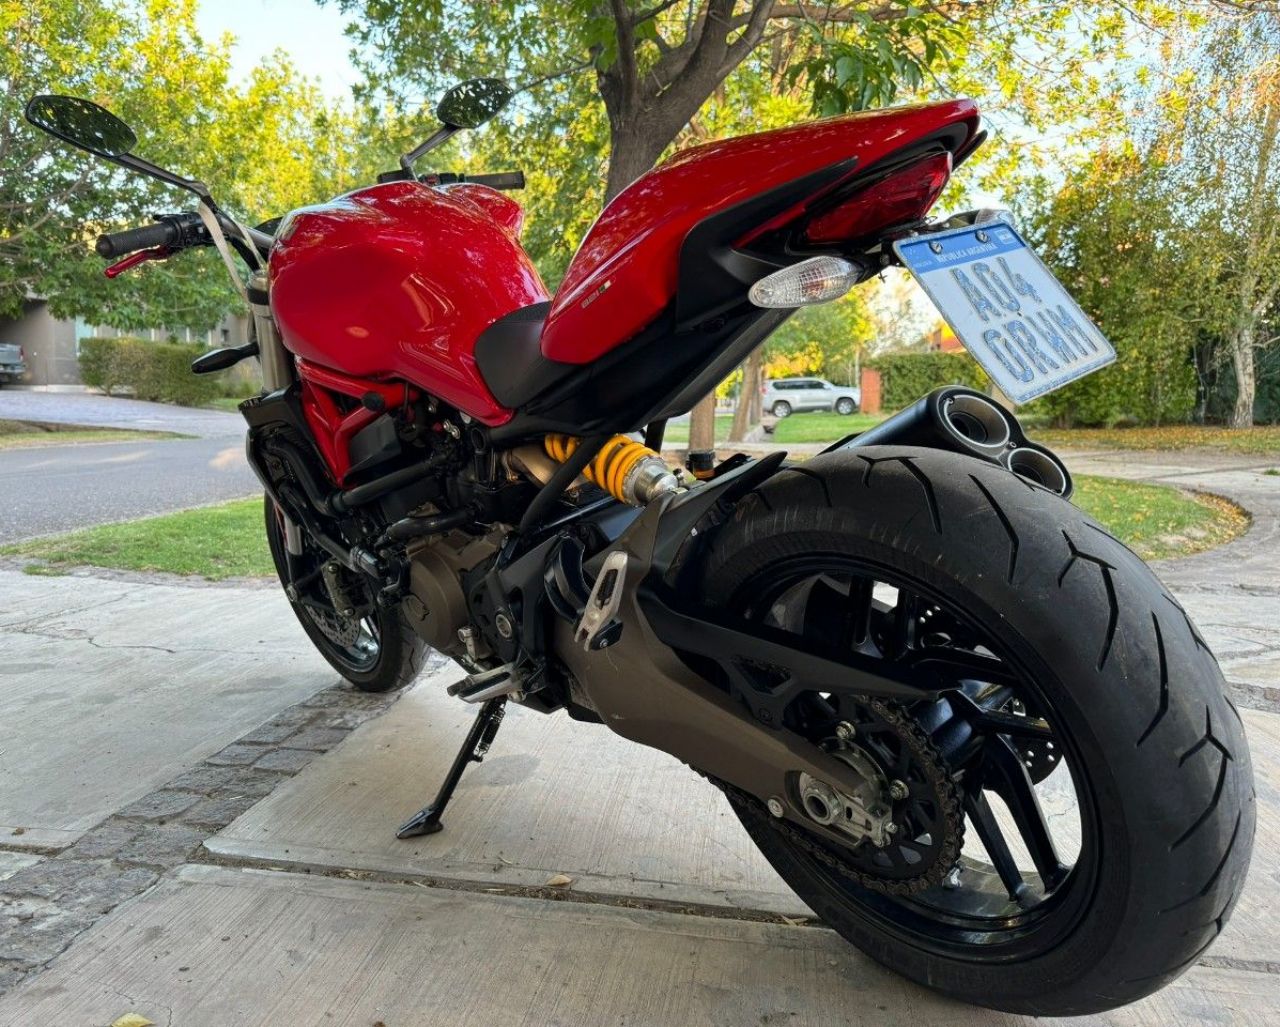 Ducati Monster Usada en Mendoza, deRuedas